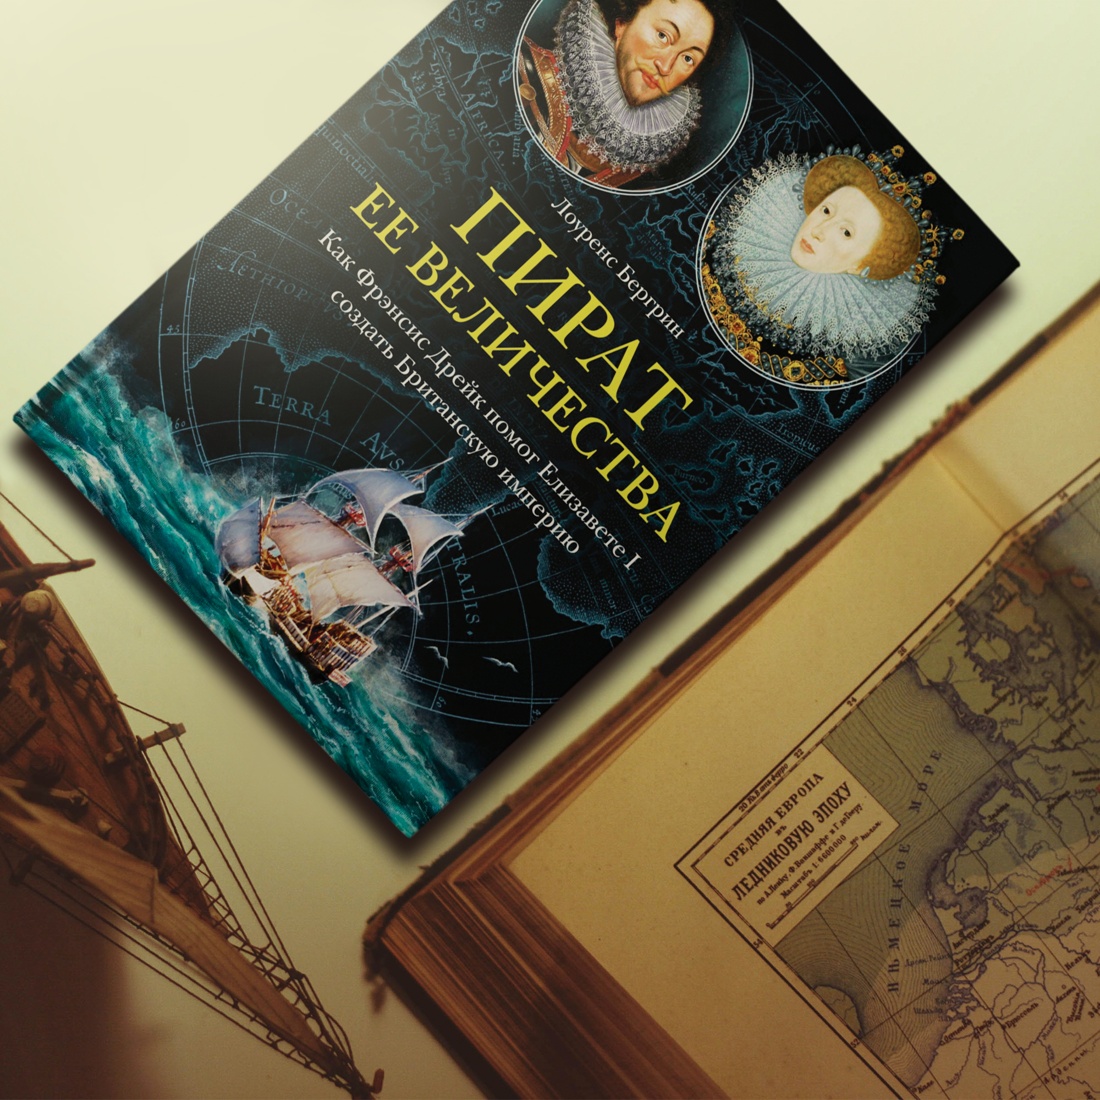 Промо материал к книге "Пират ее величества. Как Фрэнсис Дрейк помог Елизавете I создать Британскую империю" №8